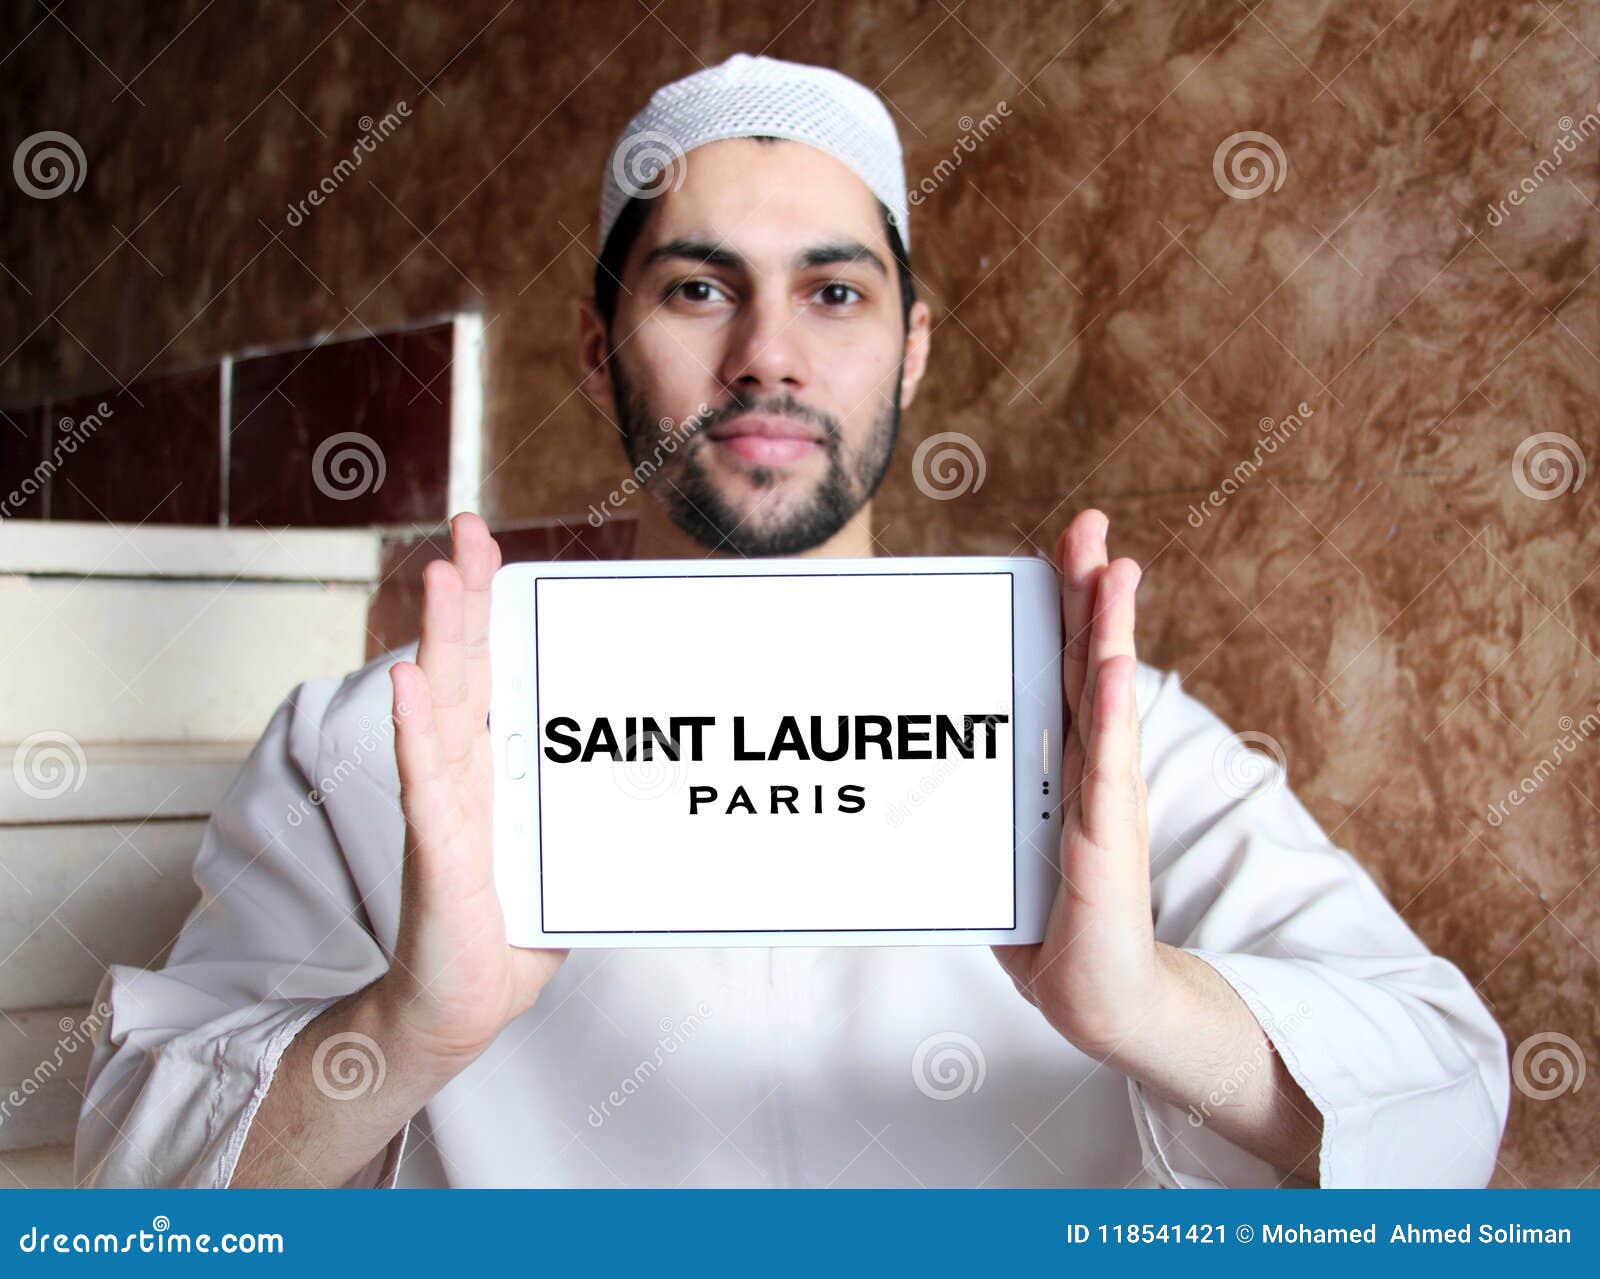 Saint L Paris Hat